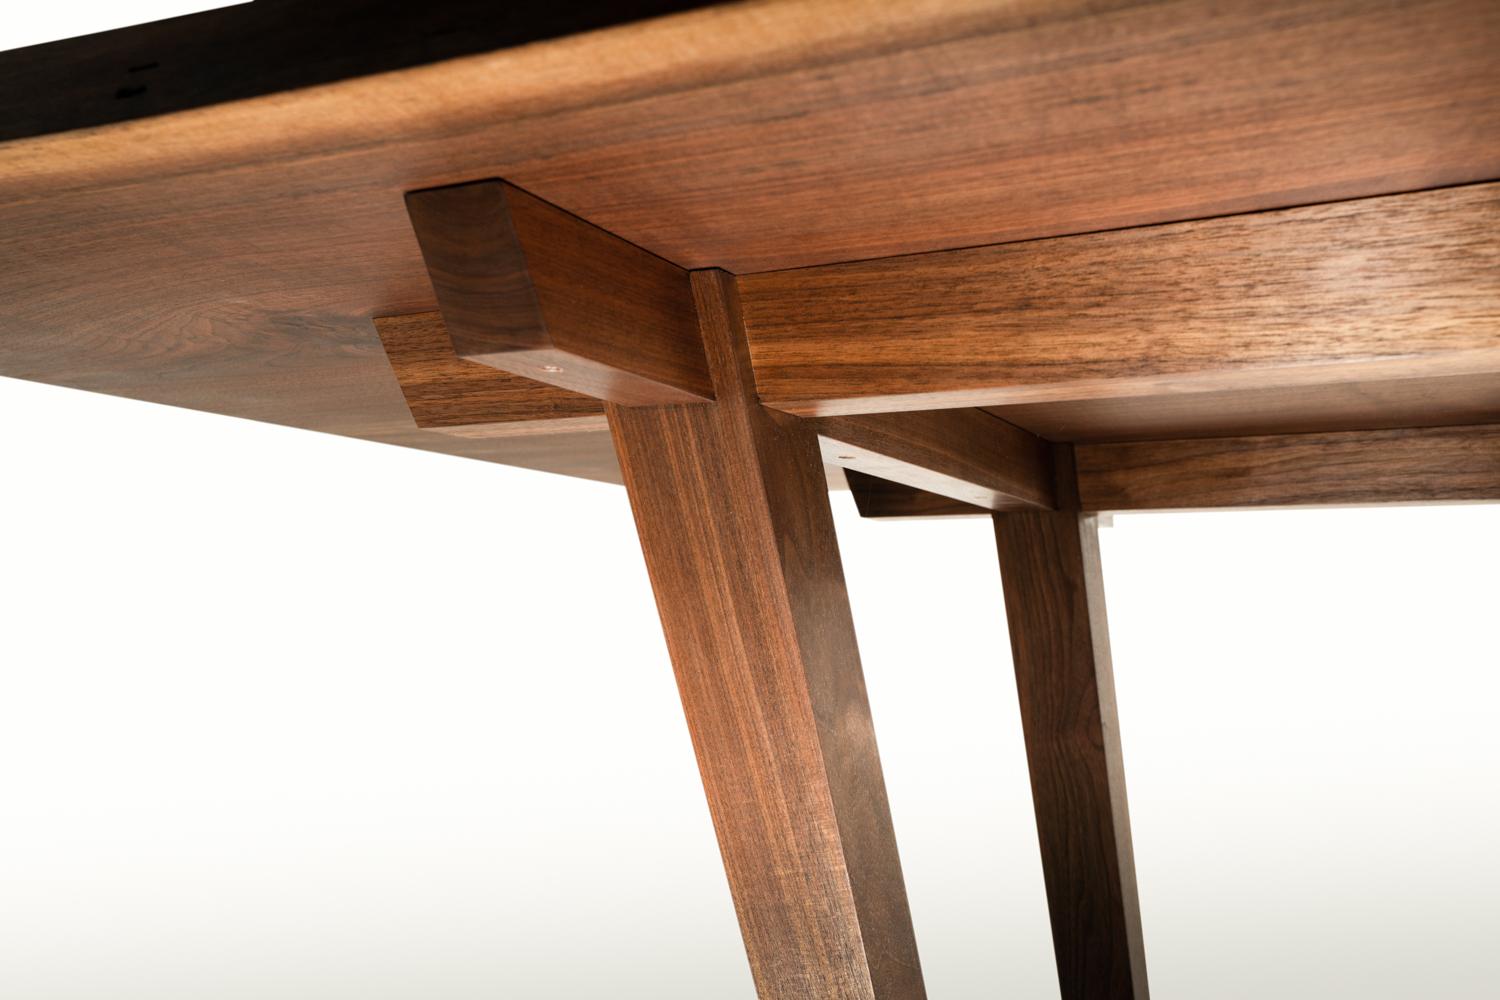 Design original d'une table de salle à manger à pieds évasés, avec un assemblage à angles composés. S'inspirant des éléments traditionnels de la menuiserie japonaise, cette table utilise une menuiserie à emboîtement qui utilise l'angle des pieds